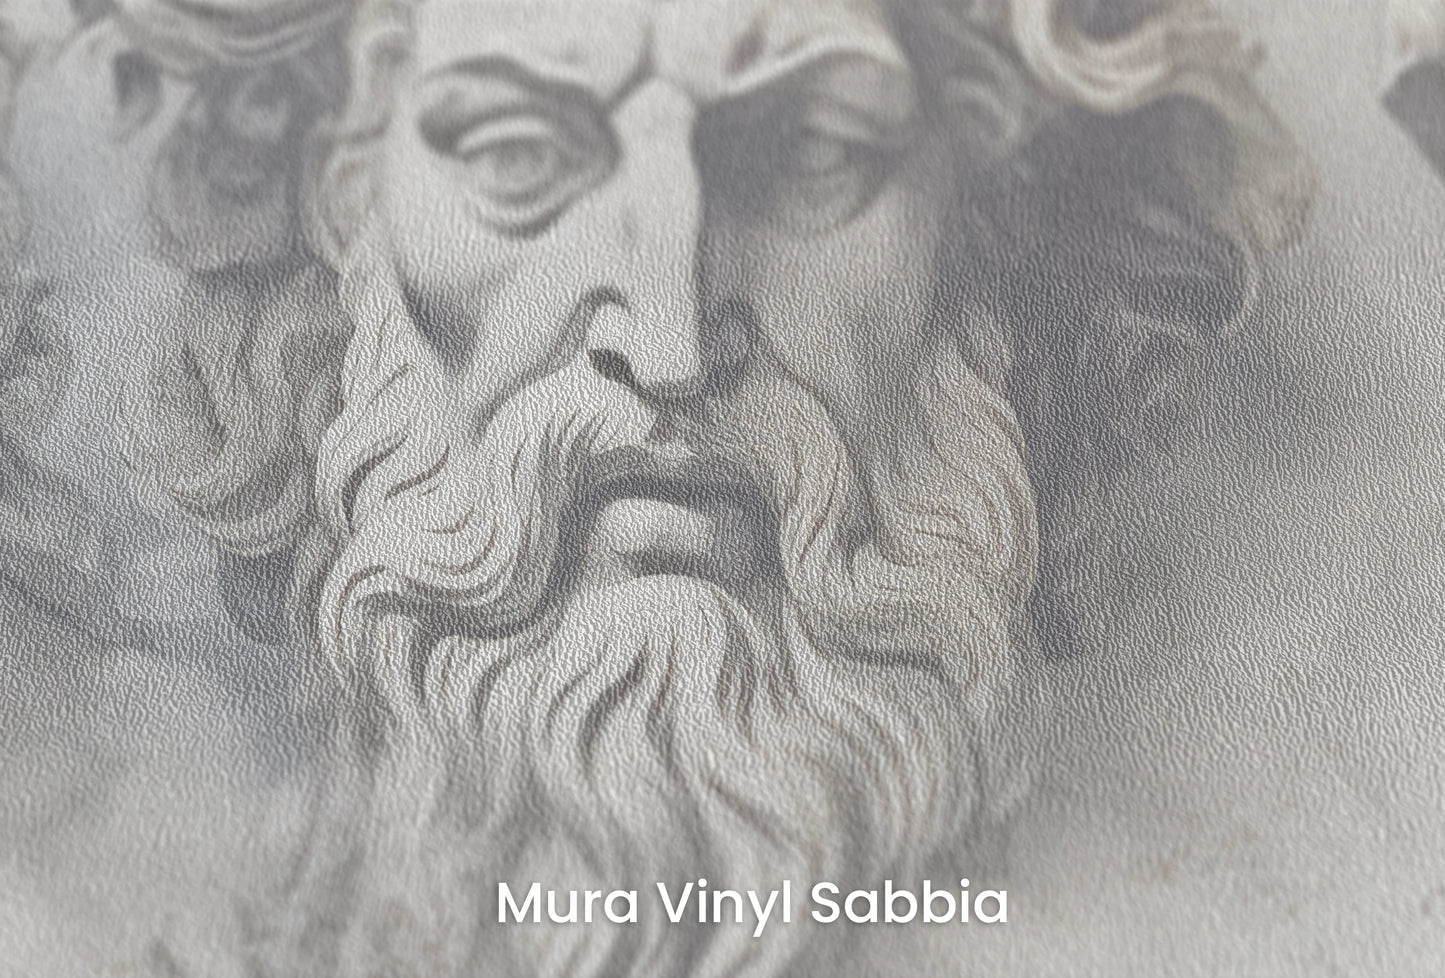 Zbliżenie na artystyczną fototapetę o nazwie Sages of Antiquity na podłożu Mura Vinyl Sabbia struktura grubego ziarna piasku.